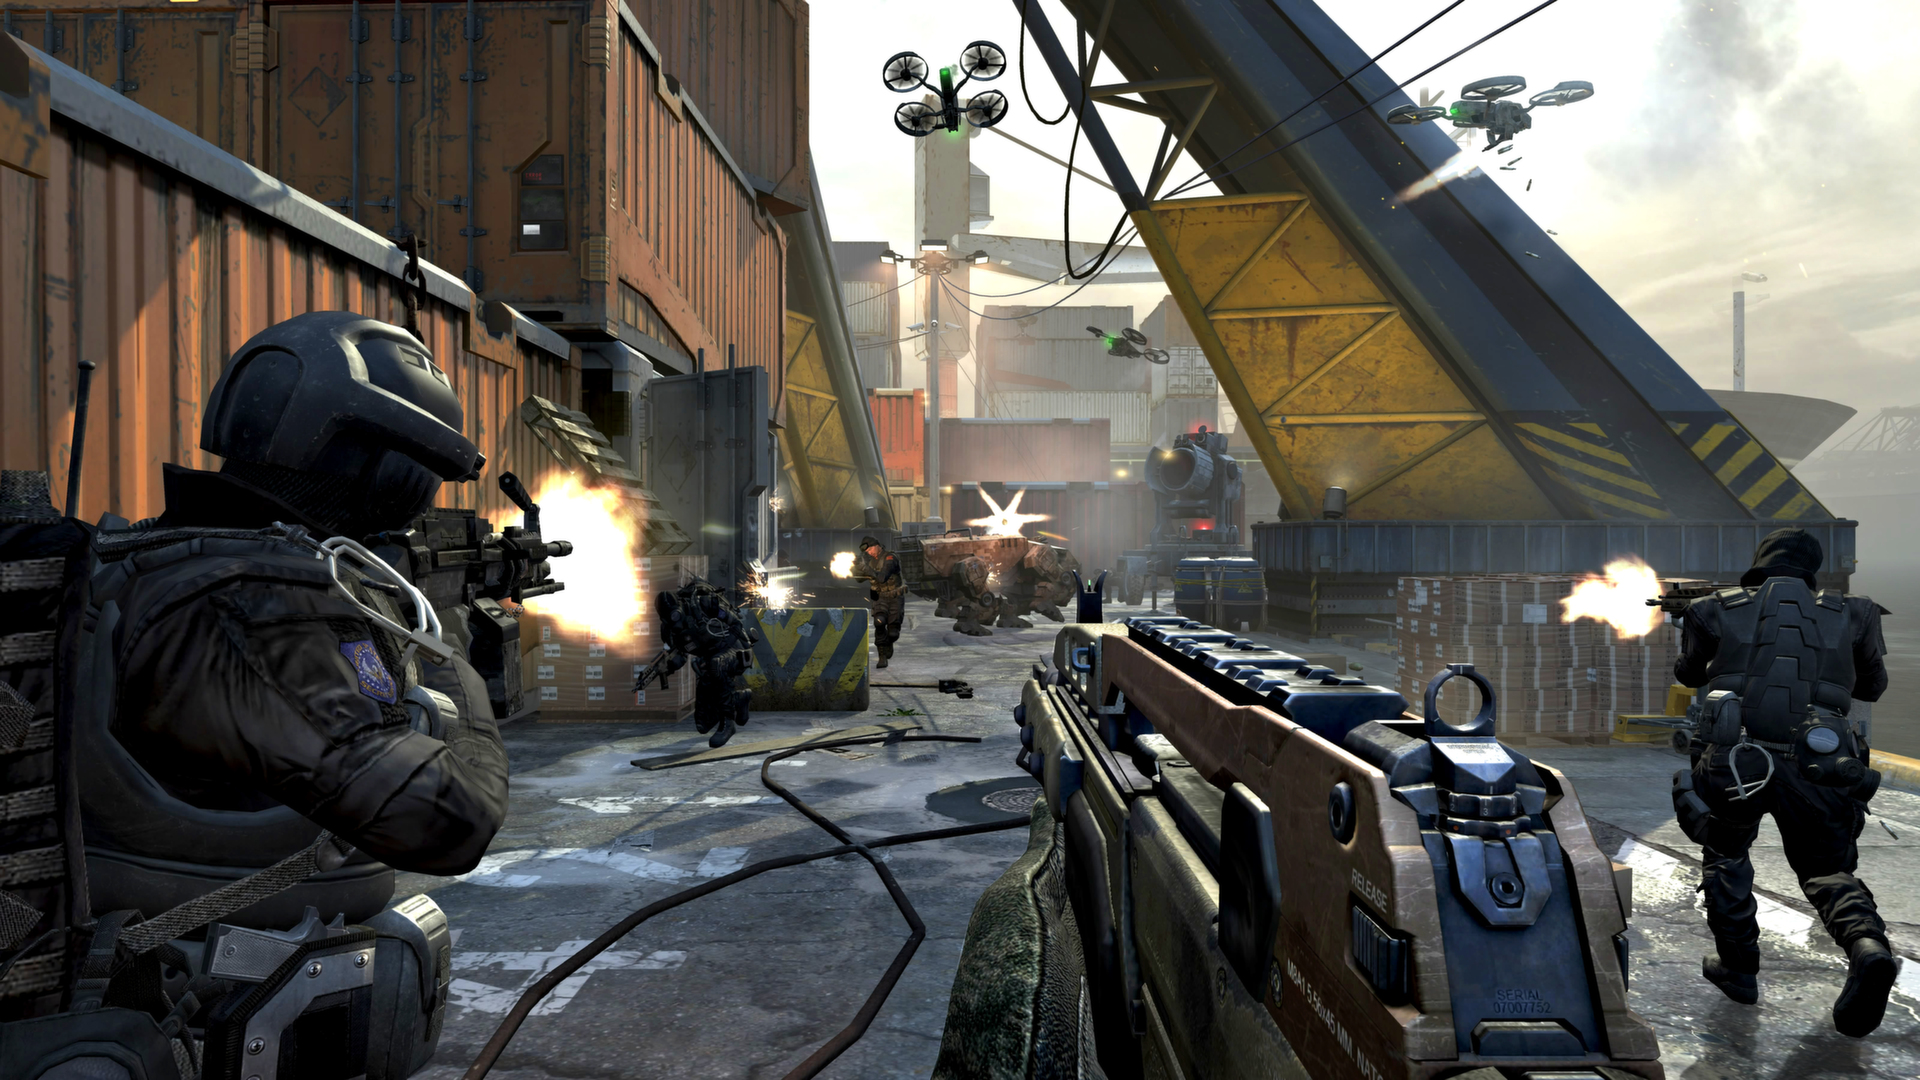 Скриншот Call of Duty Black Ops 2 с гарантией ✅ | offline